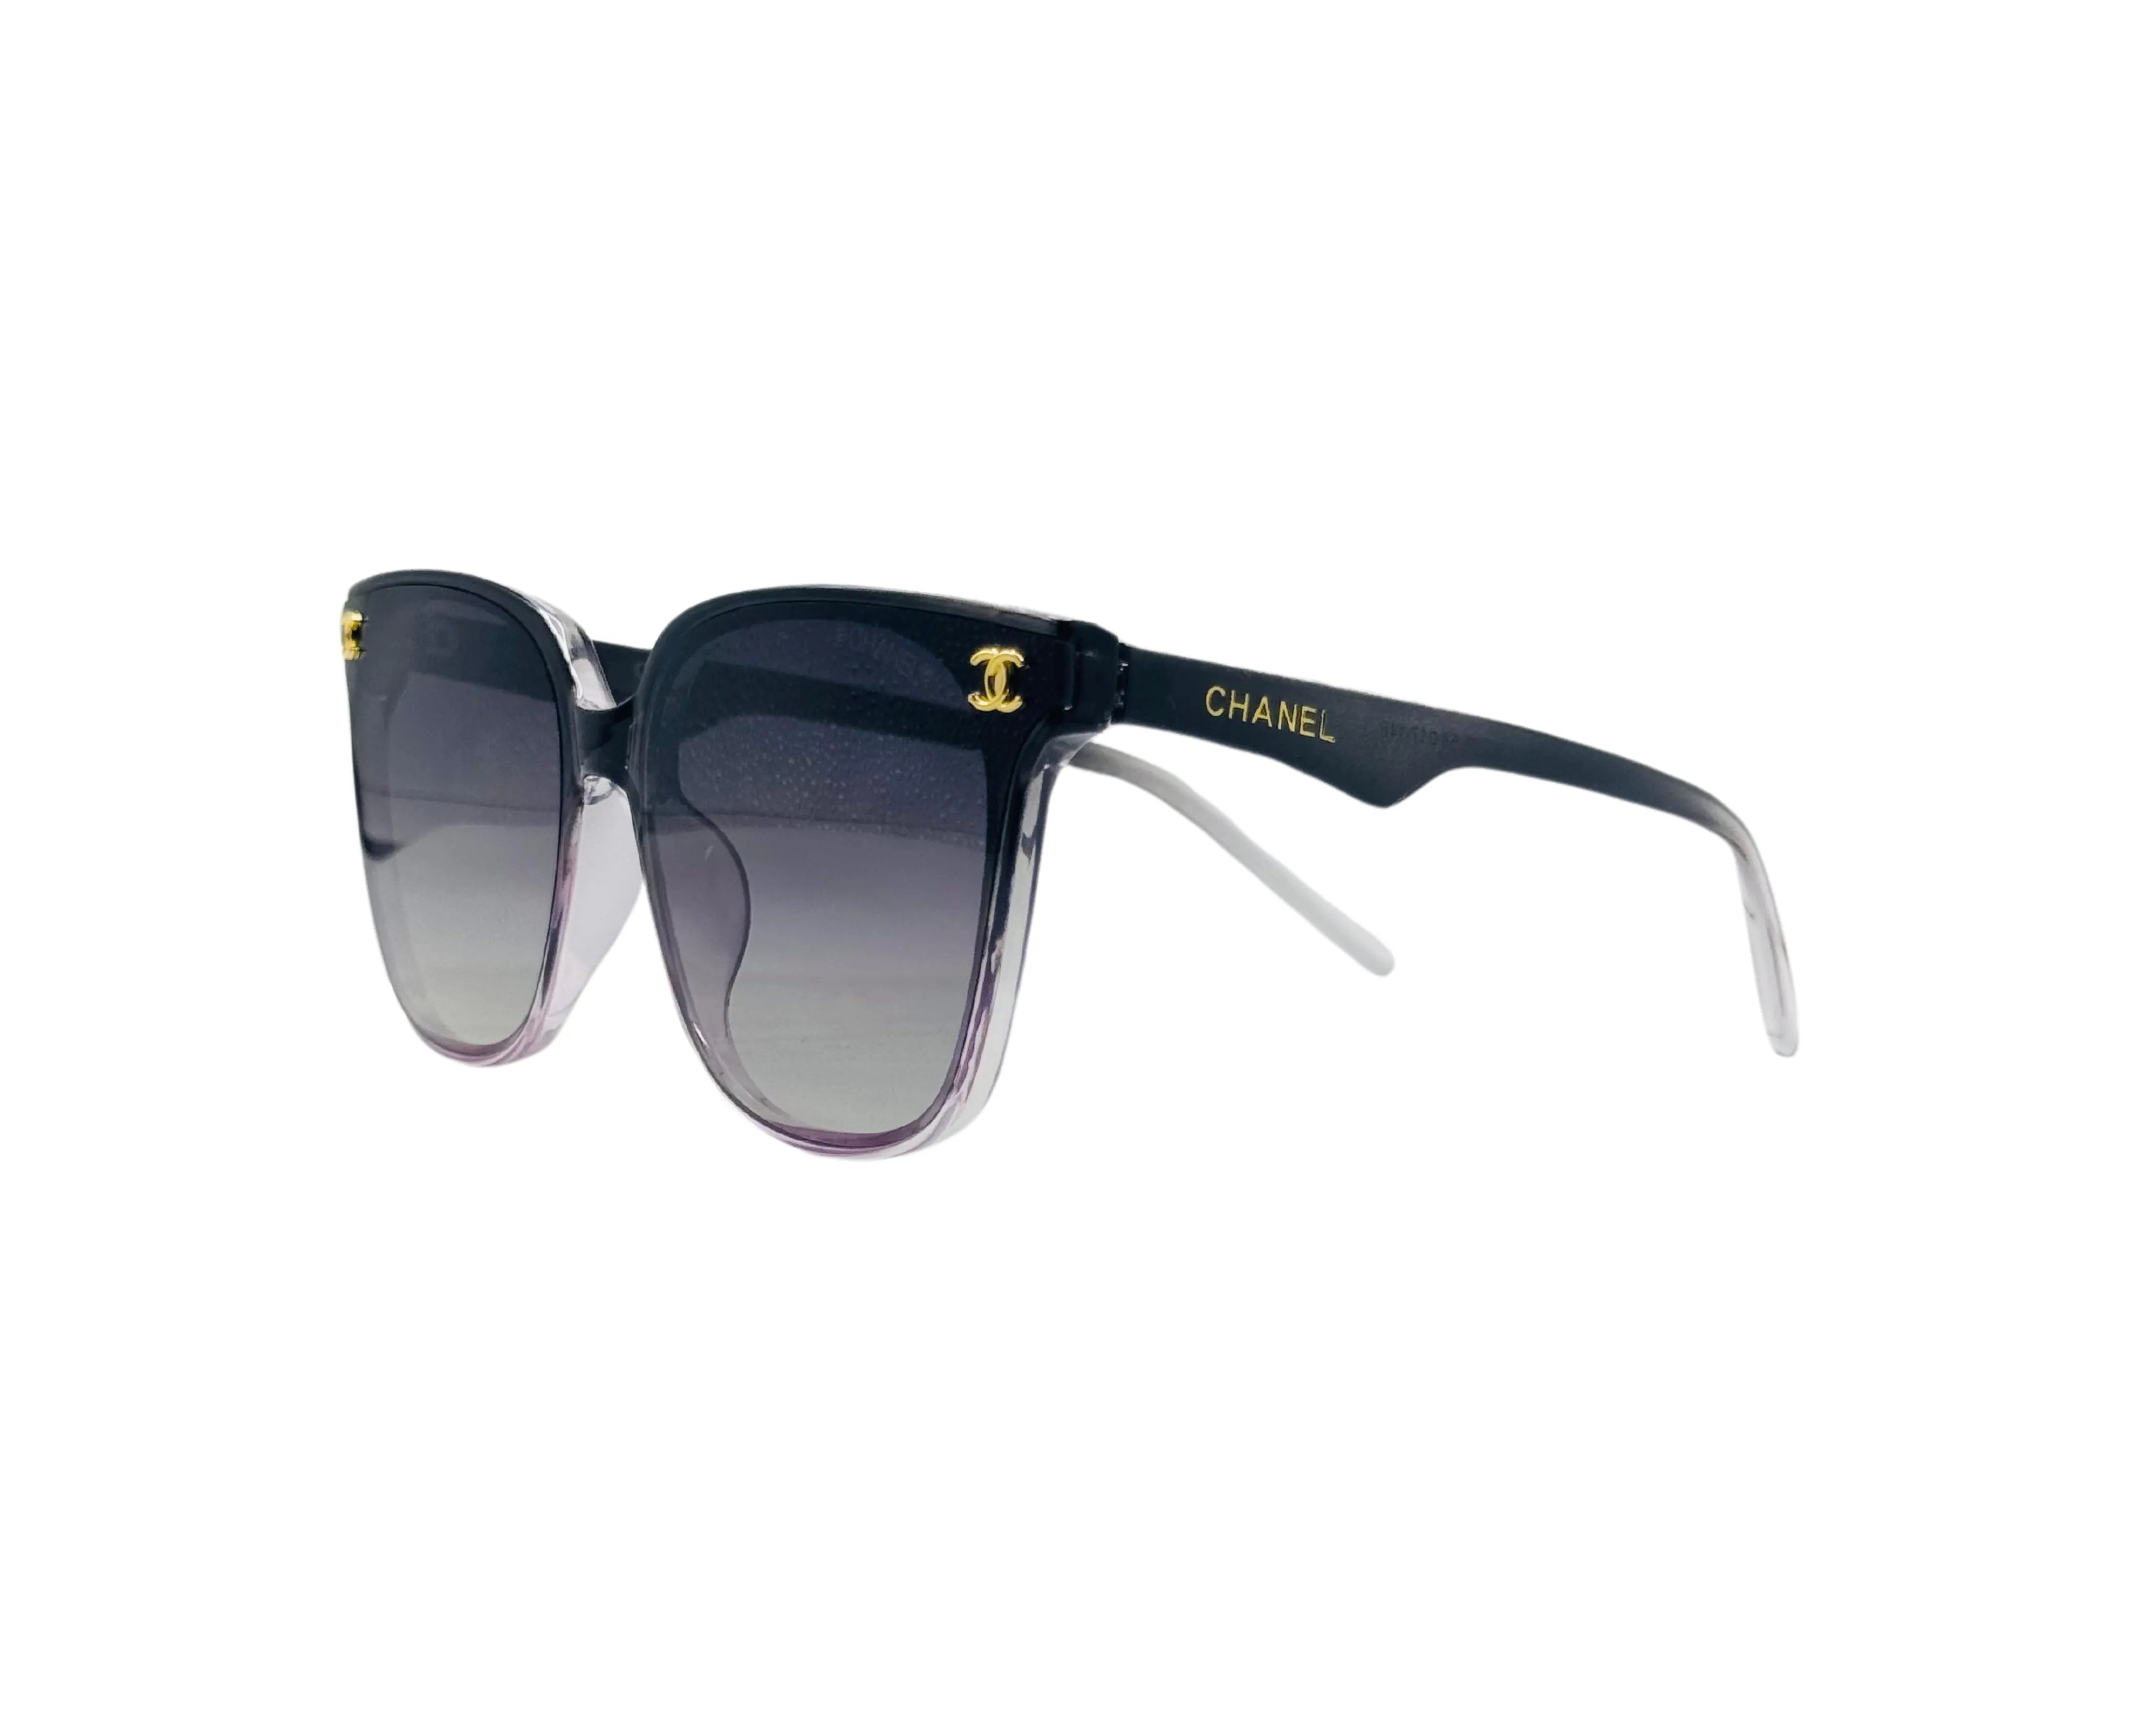 NS Deluxe - 36236 - Black Purple - Sunglasses